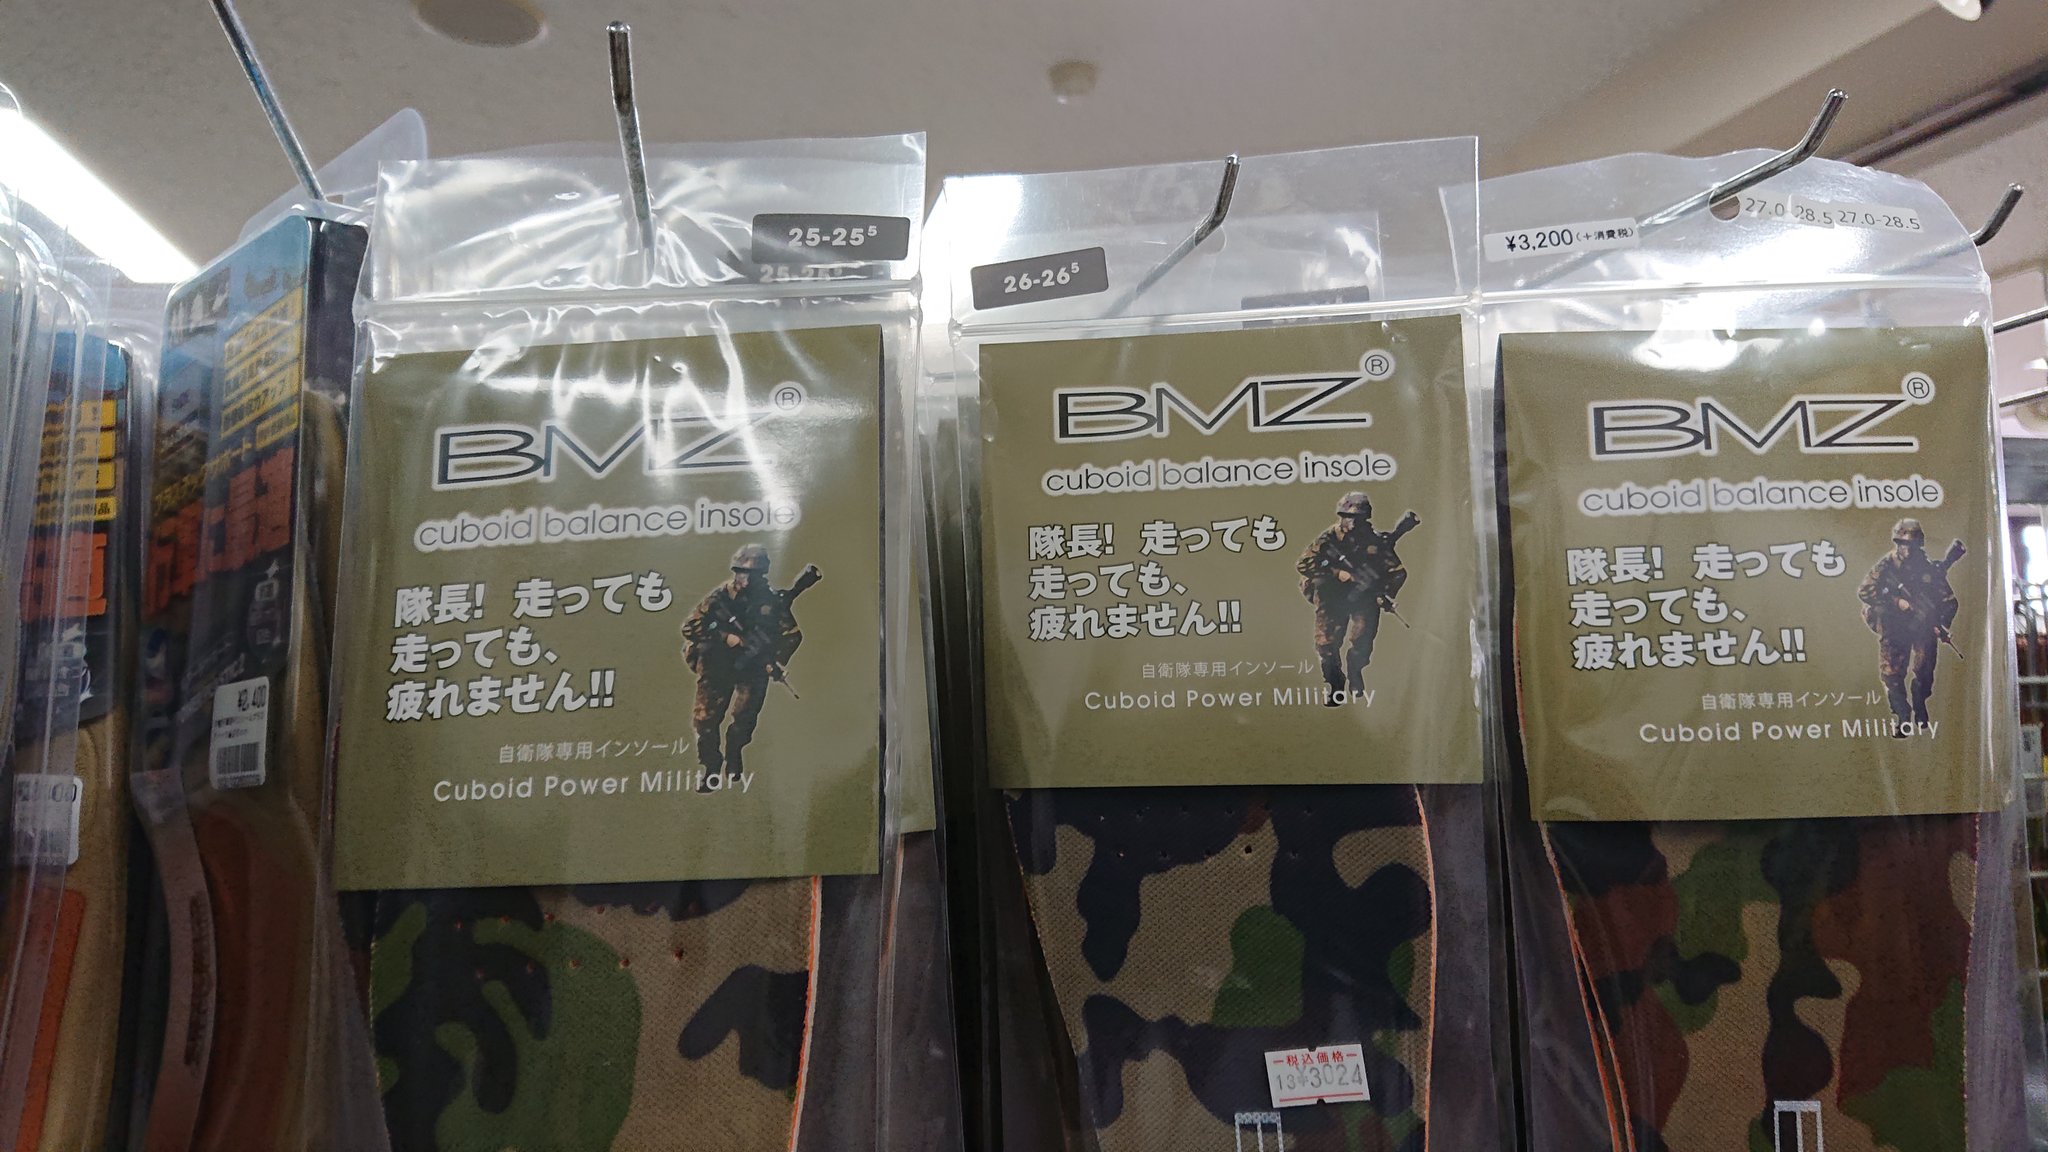 自衛隊富山地方協力本部 金沢駐屯地なう 駐屯地の売店には 一般では見ないようなキャッチフレーズの商品が並びます ノ